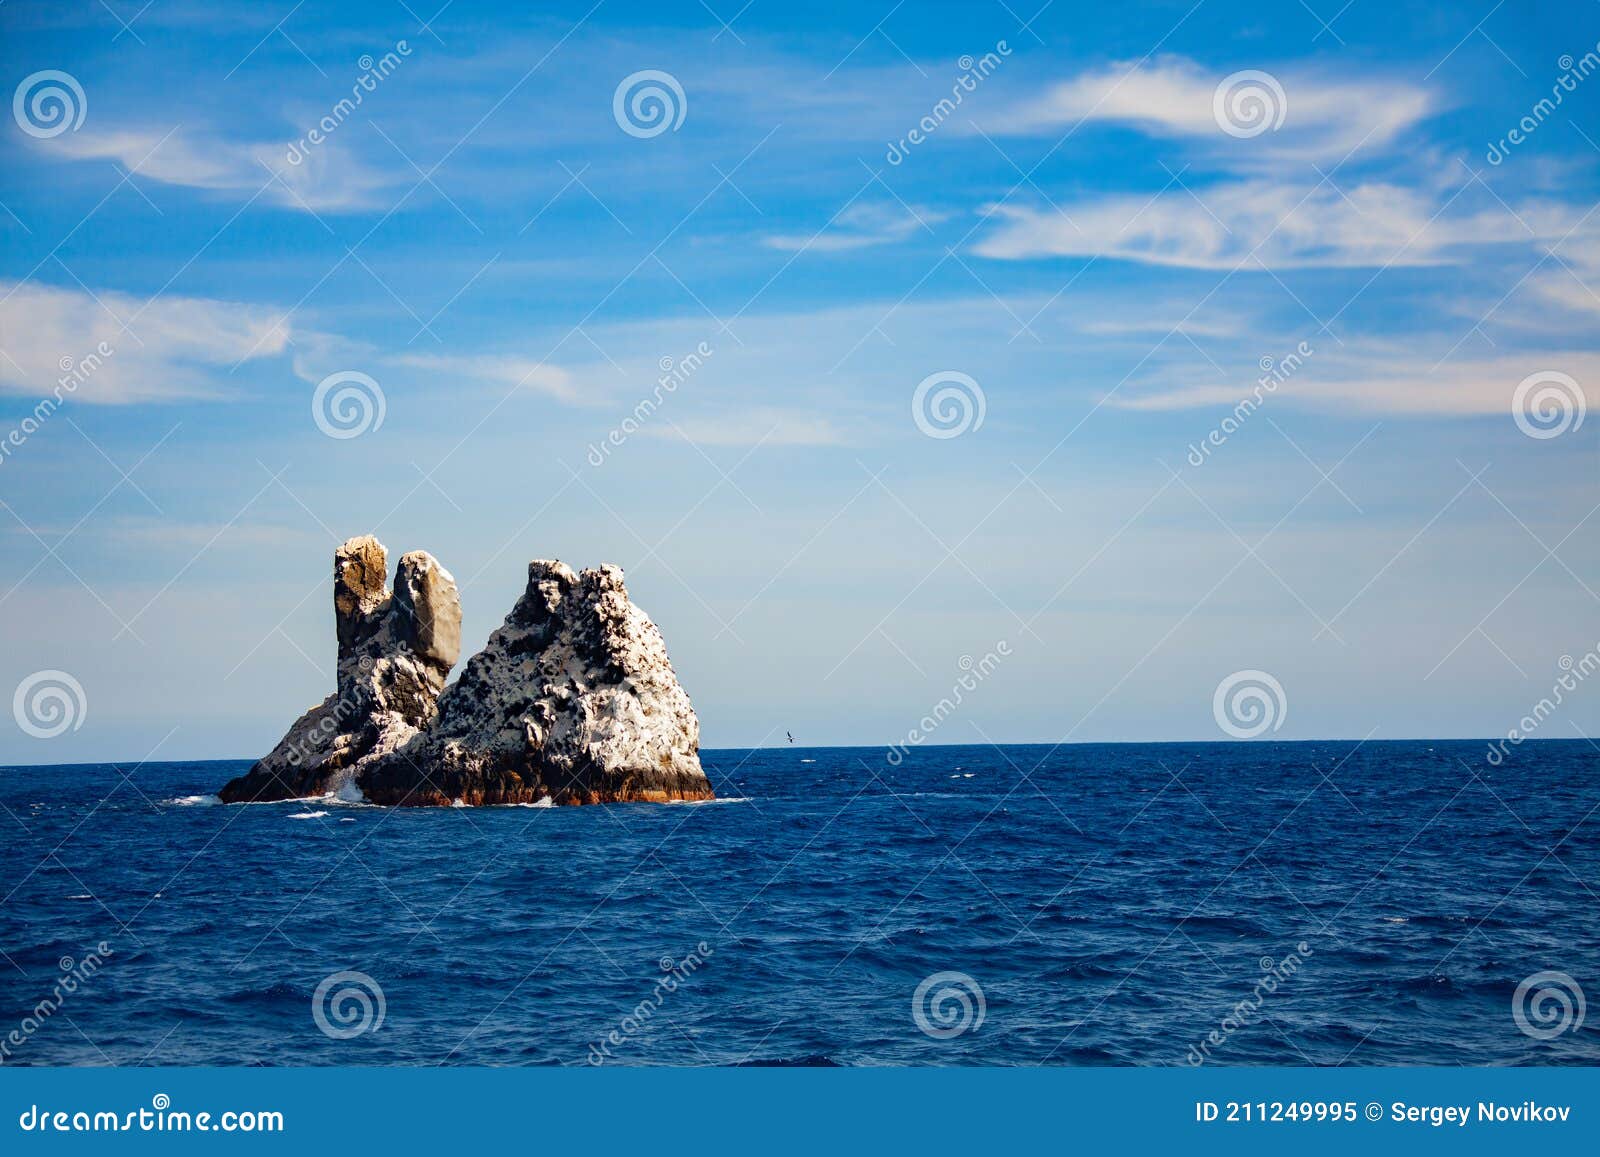 roca partida the smallest of socorro islands